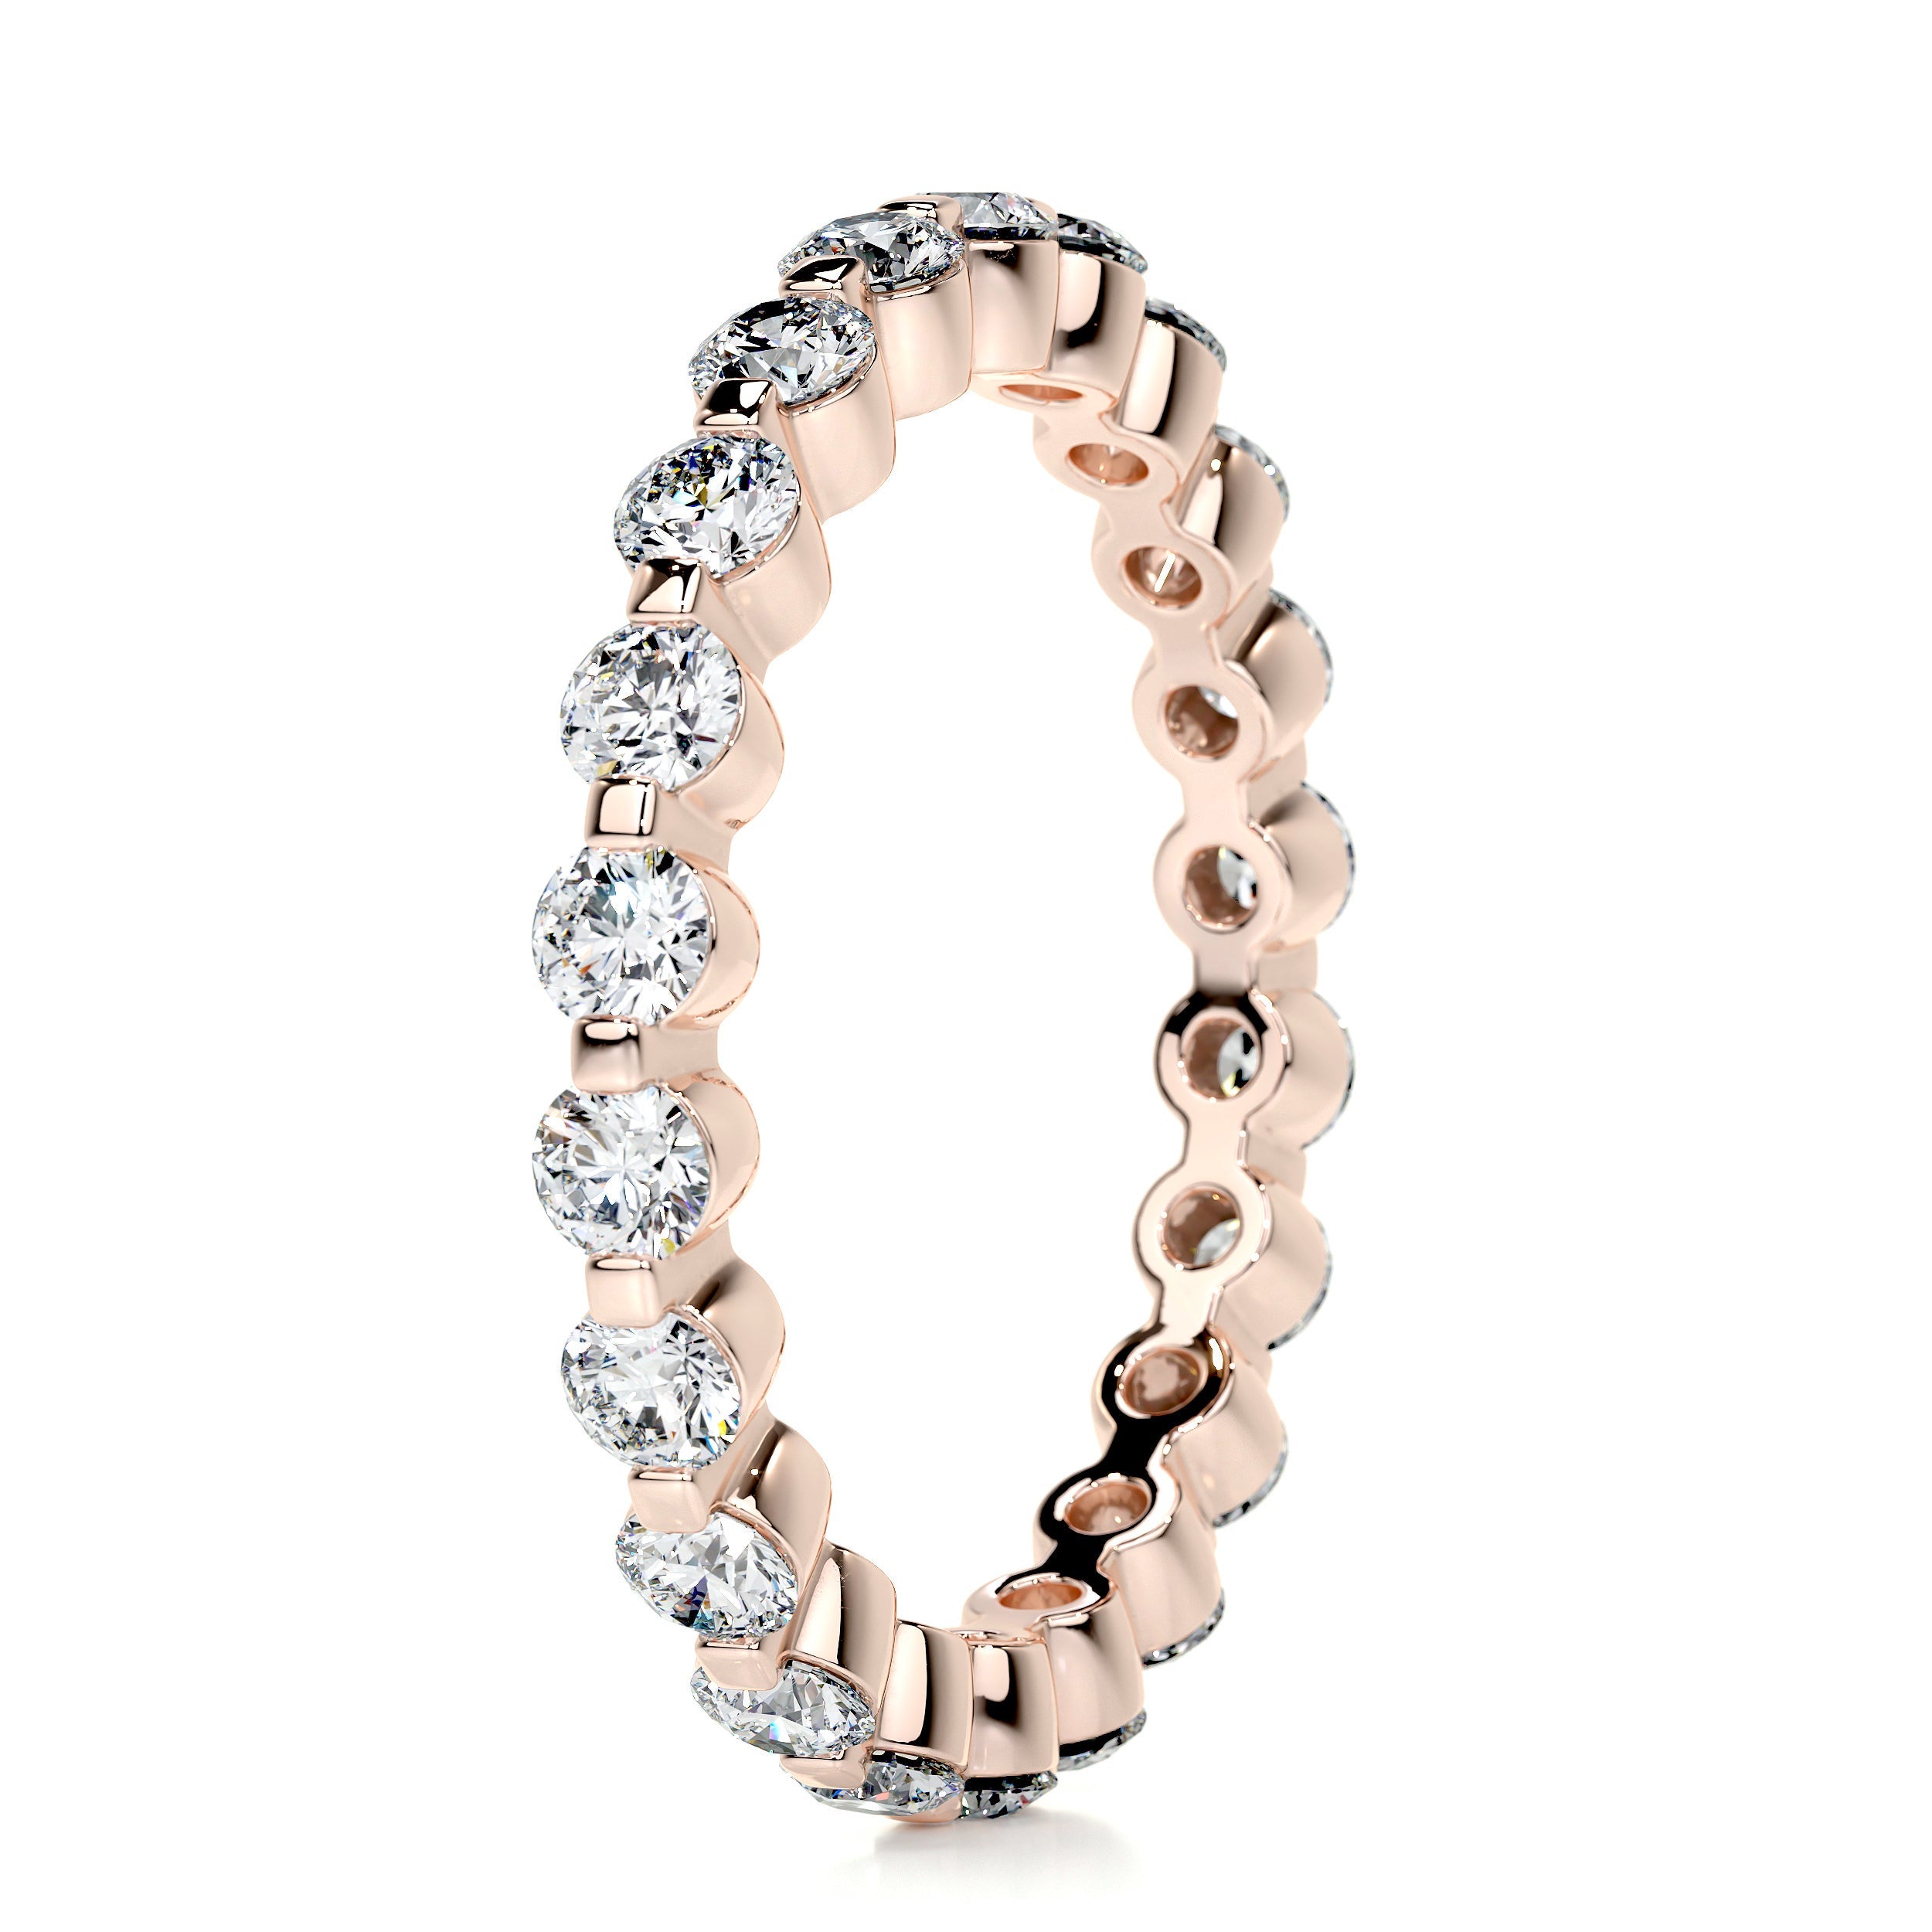 Josie Eternity Wedding Ring   (1 Carat) -14K Rose Gold (RTS)